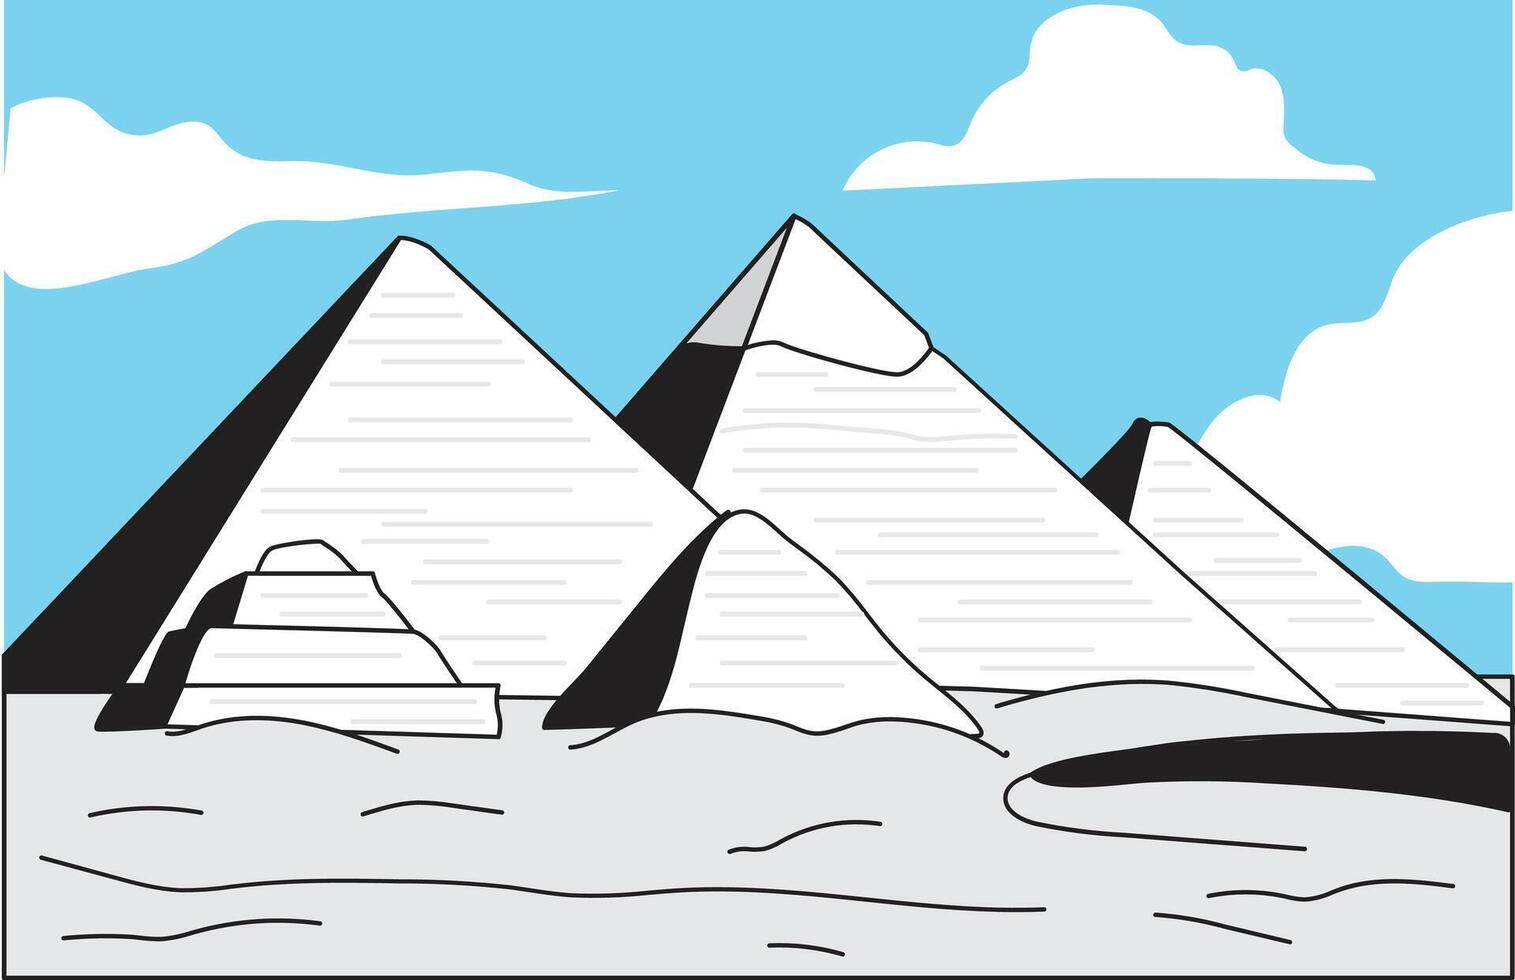 egyptisk pyramider. vektor illustration på en blå himmel bakgrund.